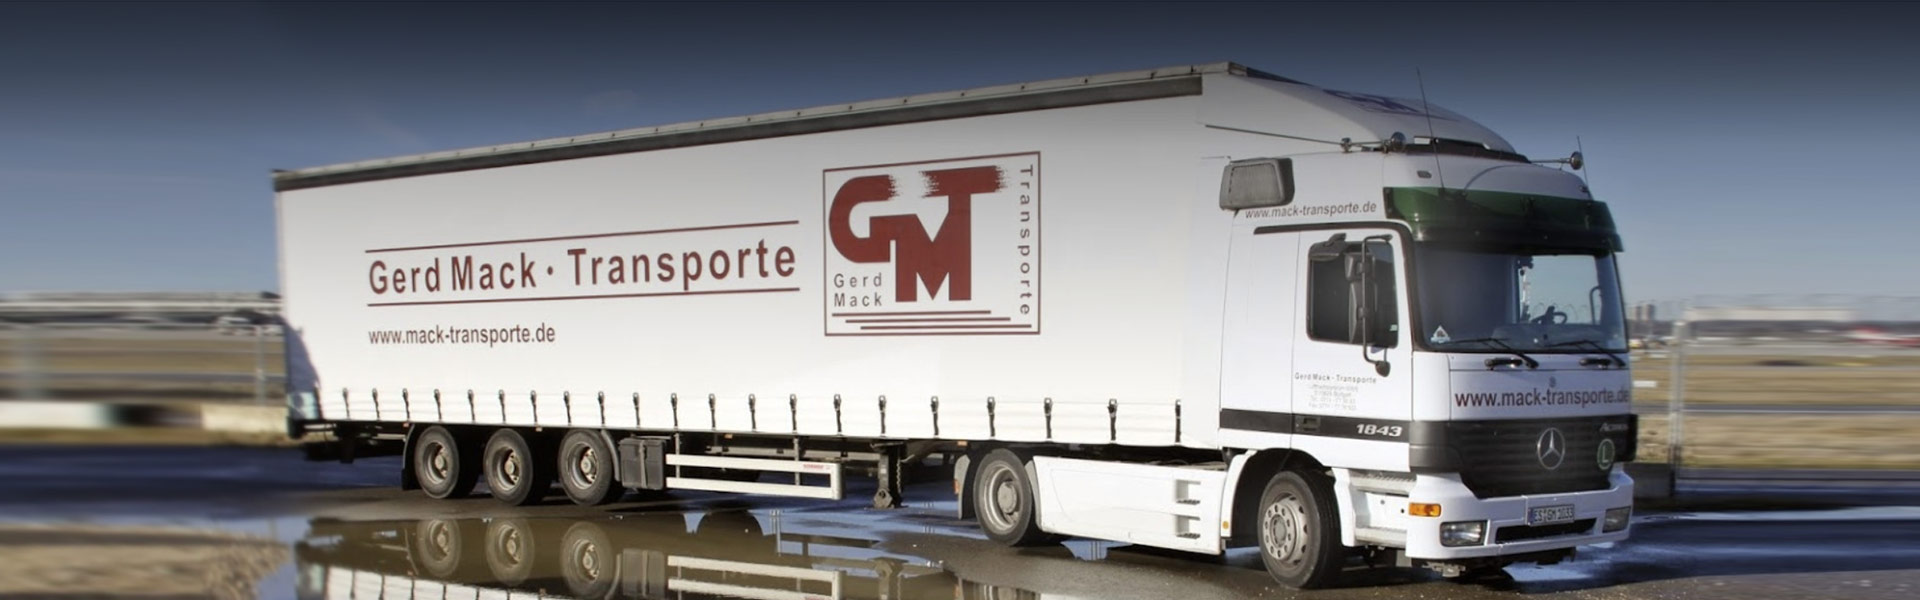 Hoch qualifiziert und zertifiziert Gerd-Mack-Transporte